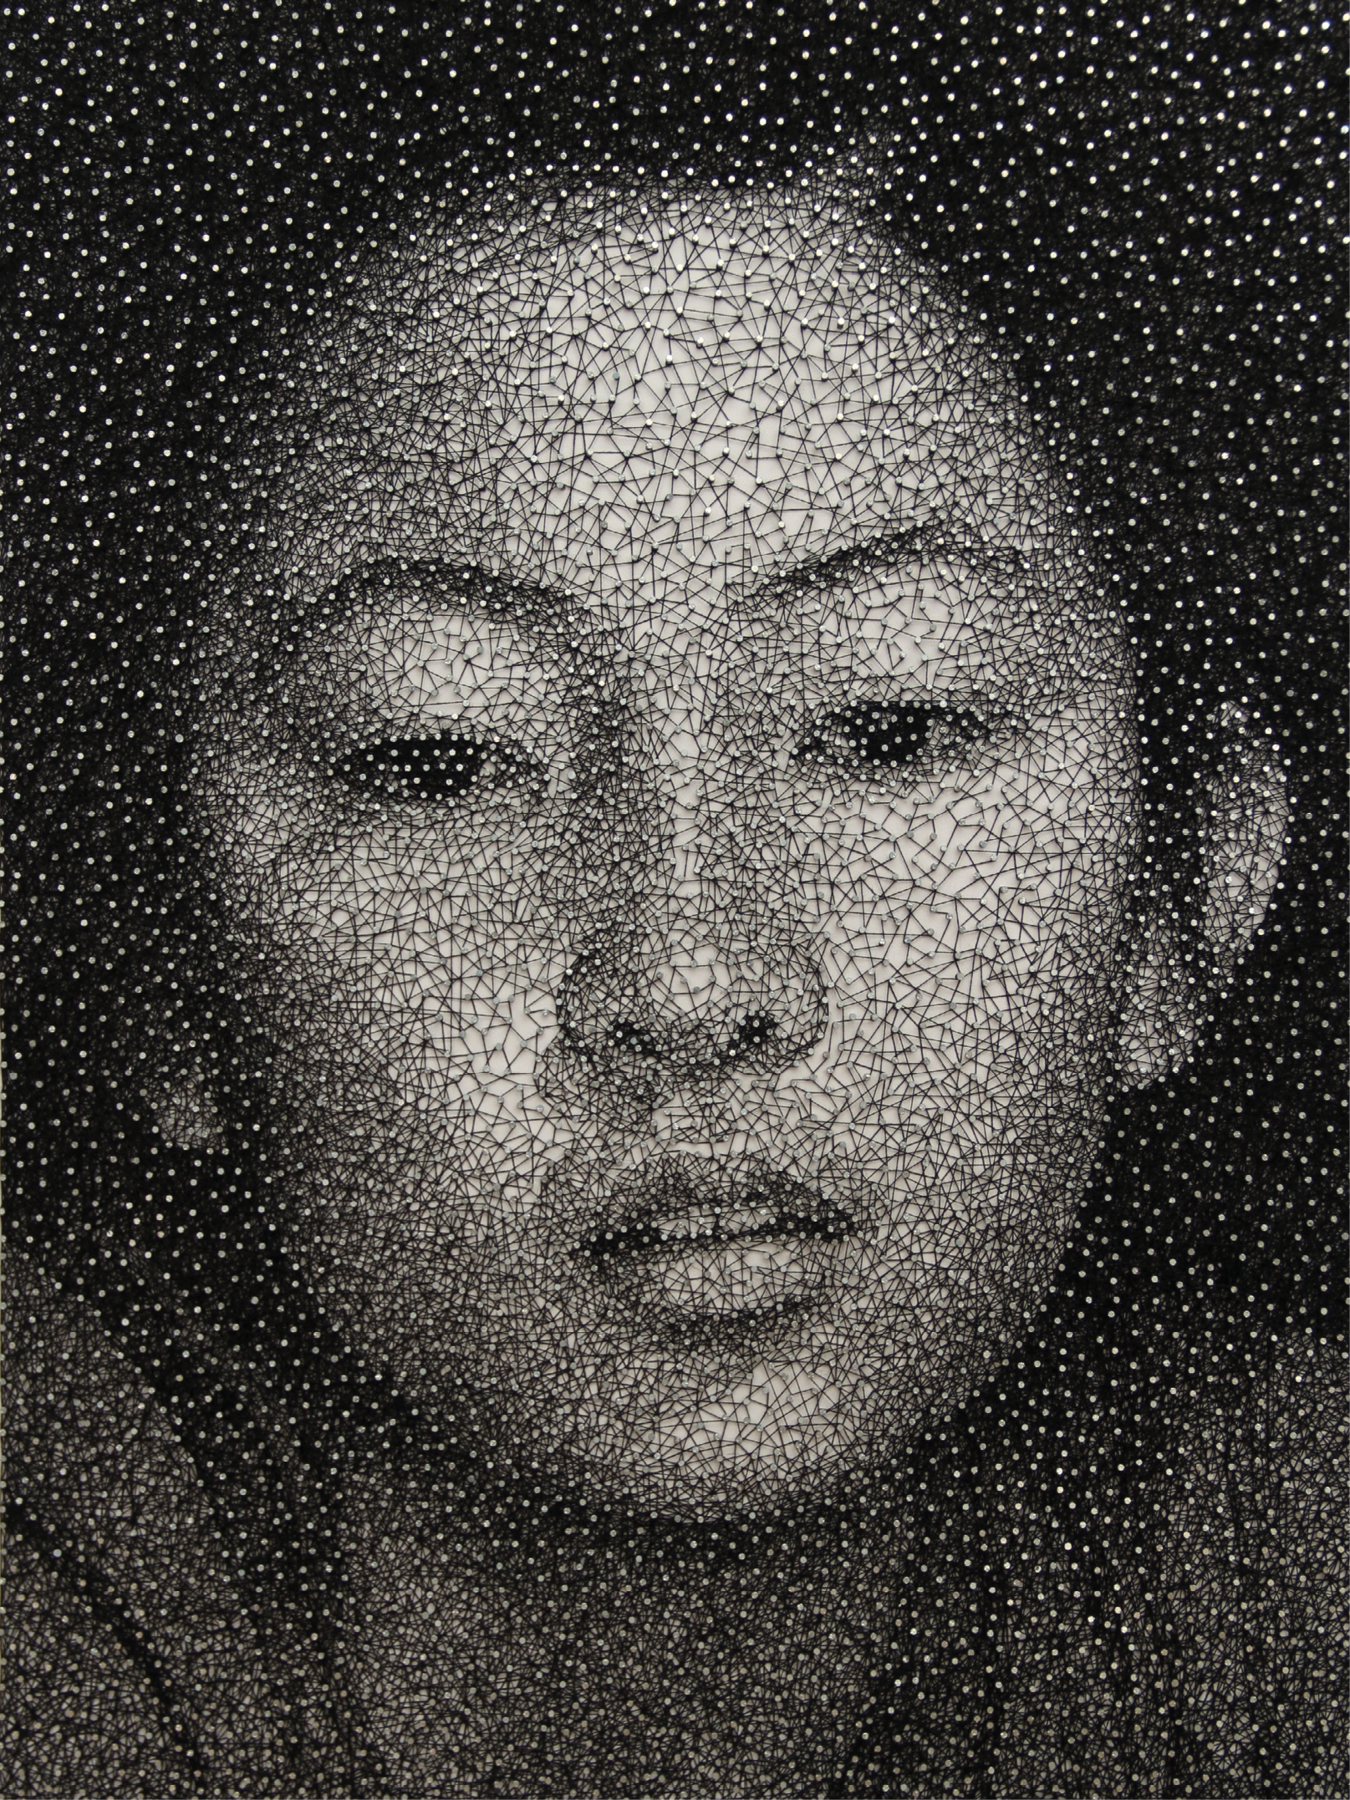 Fotografia.
Painel com pregos e linhas esticadas entre eles formando um rosto de mulher oriental, olhos pequenos, sobrancelha arqueada e boca pequena.